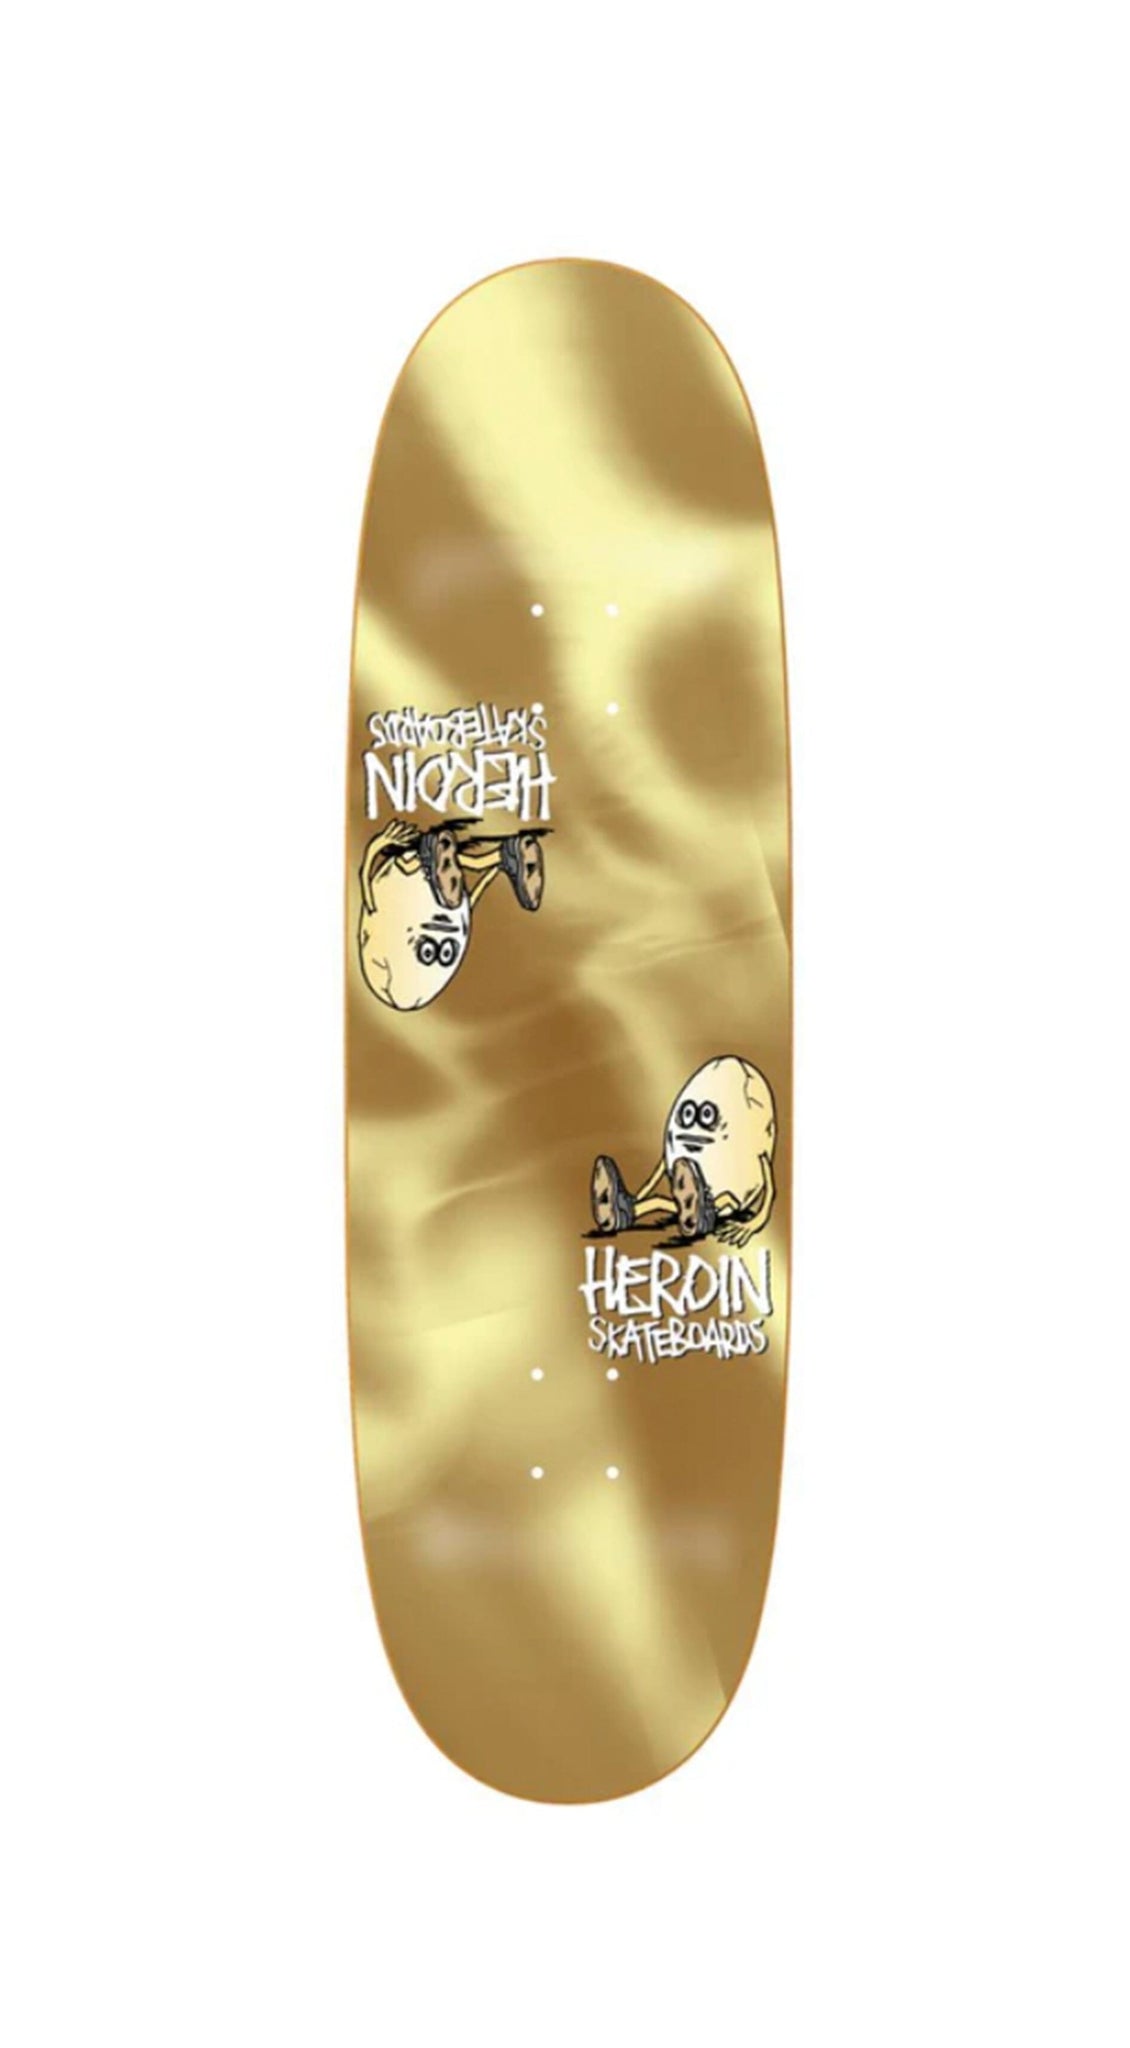 Heroin Skateboards Symmetrical Egg Gold 9.25 Skateboard Deck- Tabla Skate Tabla/Deck Heroin Skateboards 